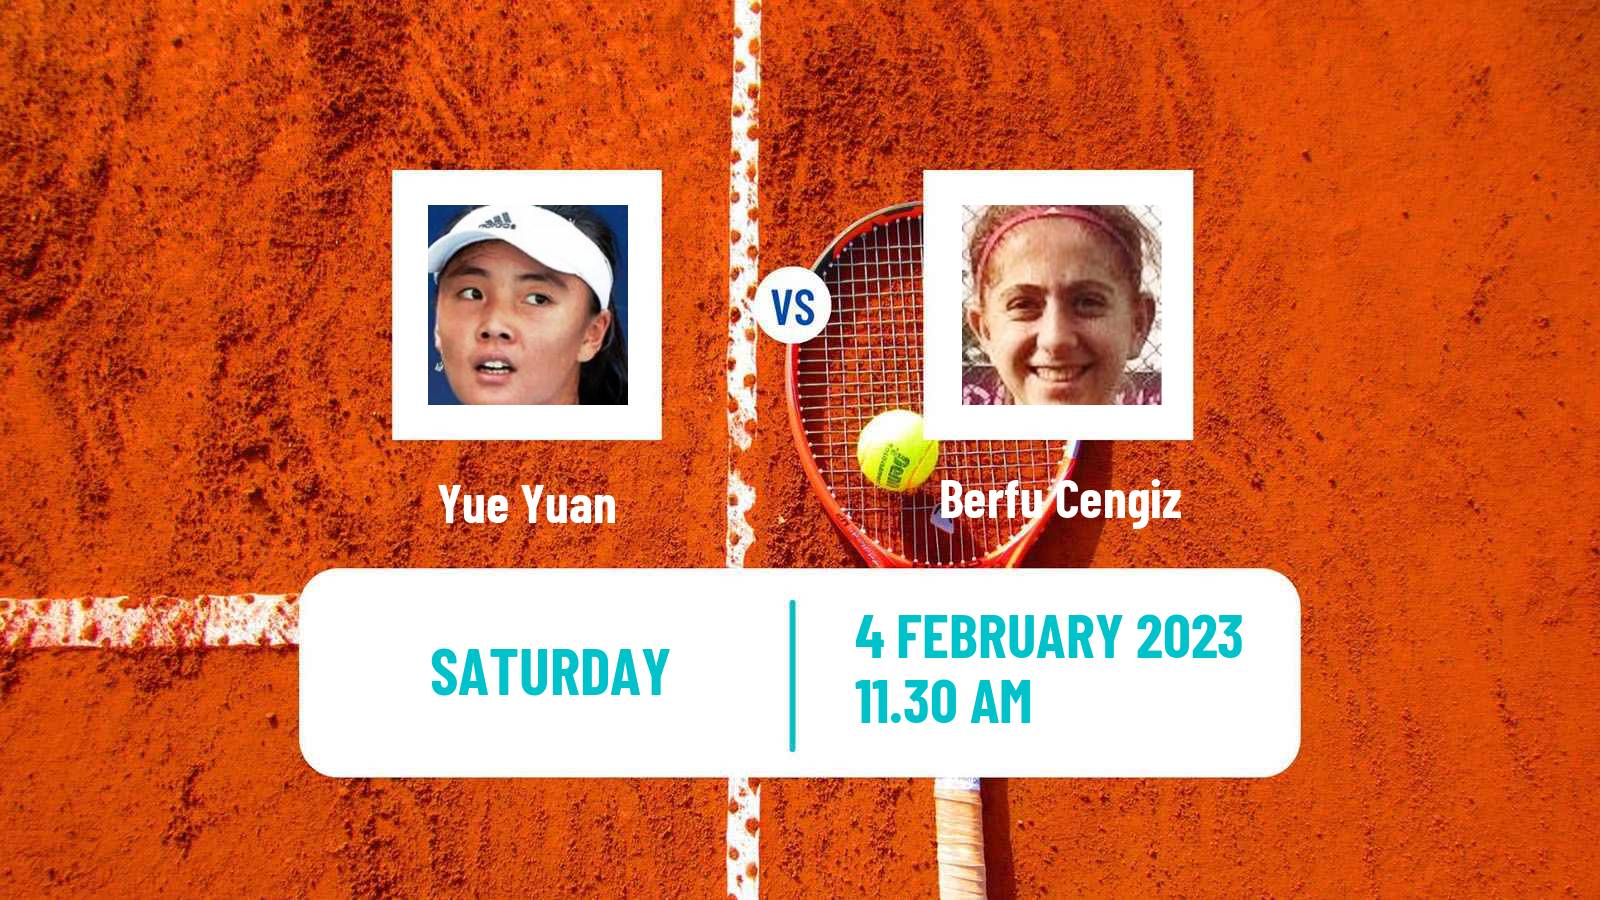 Tennis ITF Tournaments Yue Yuan - Berfu Cengiz